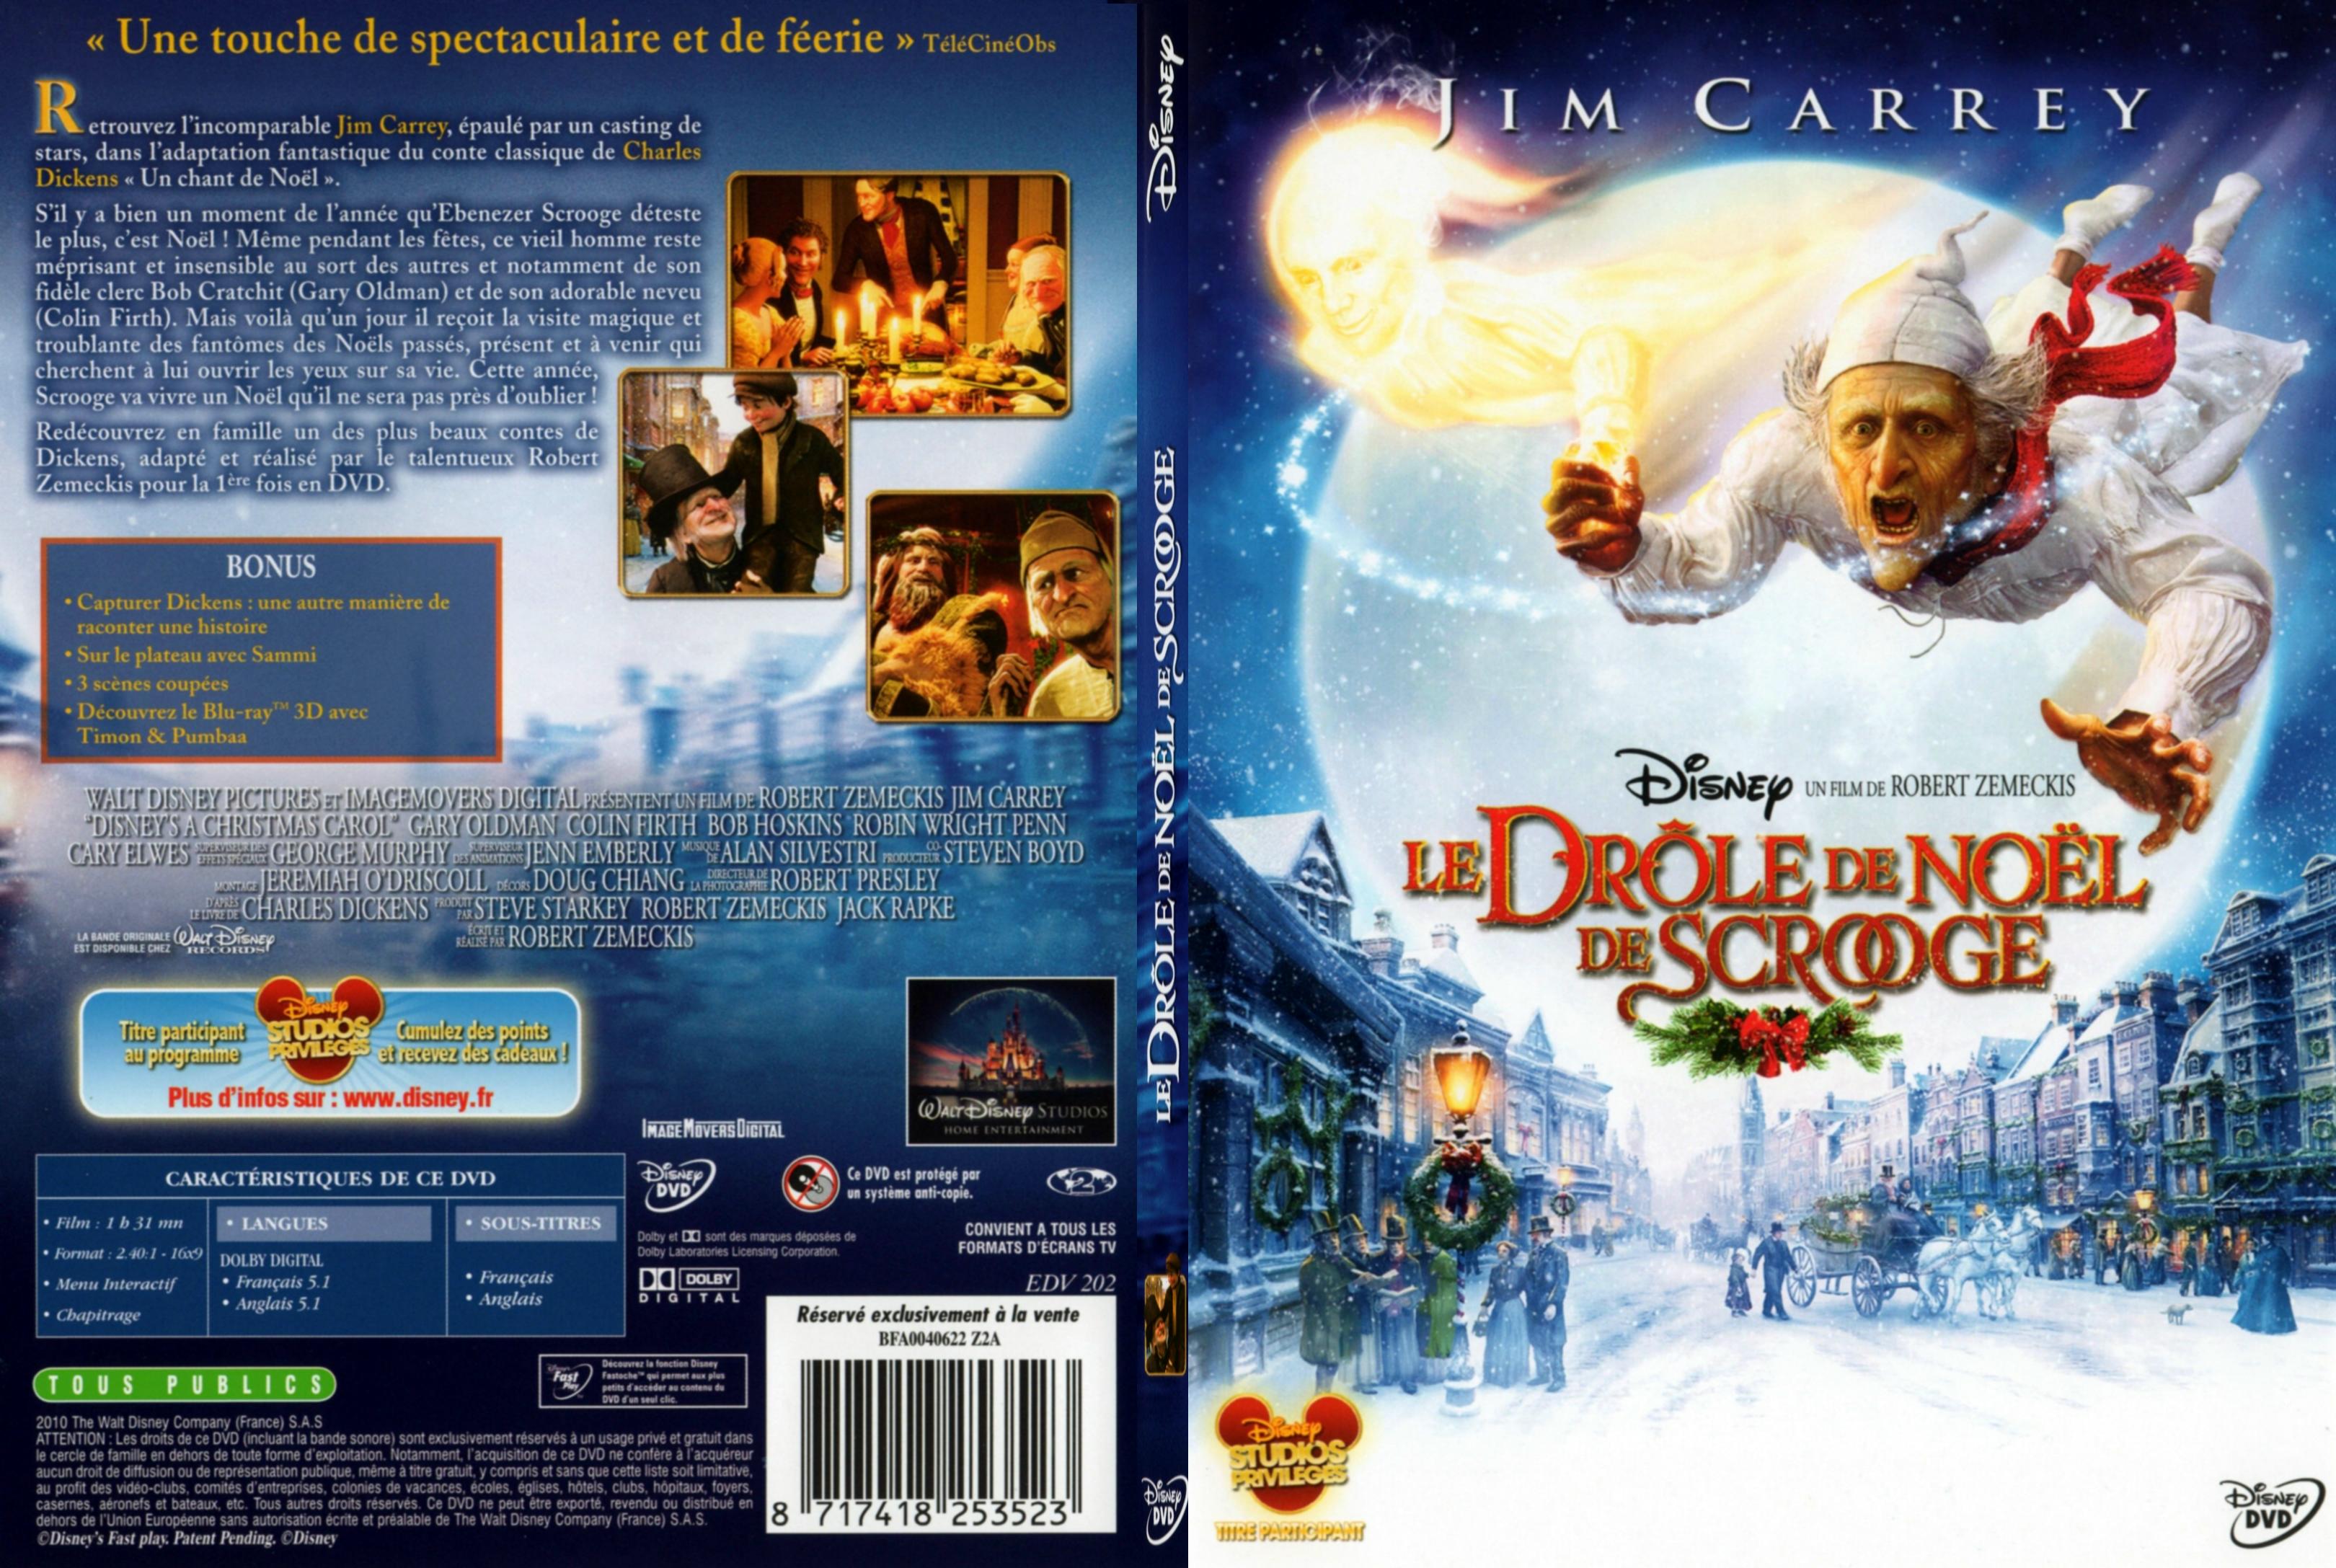 Jaquette DVD Le drole de Noel de Scrooge - SLIM